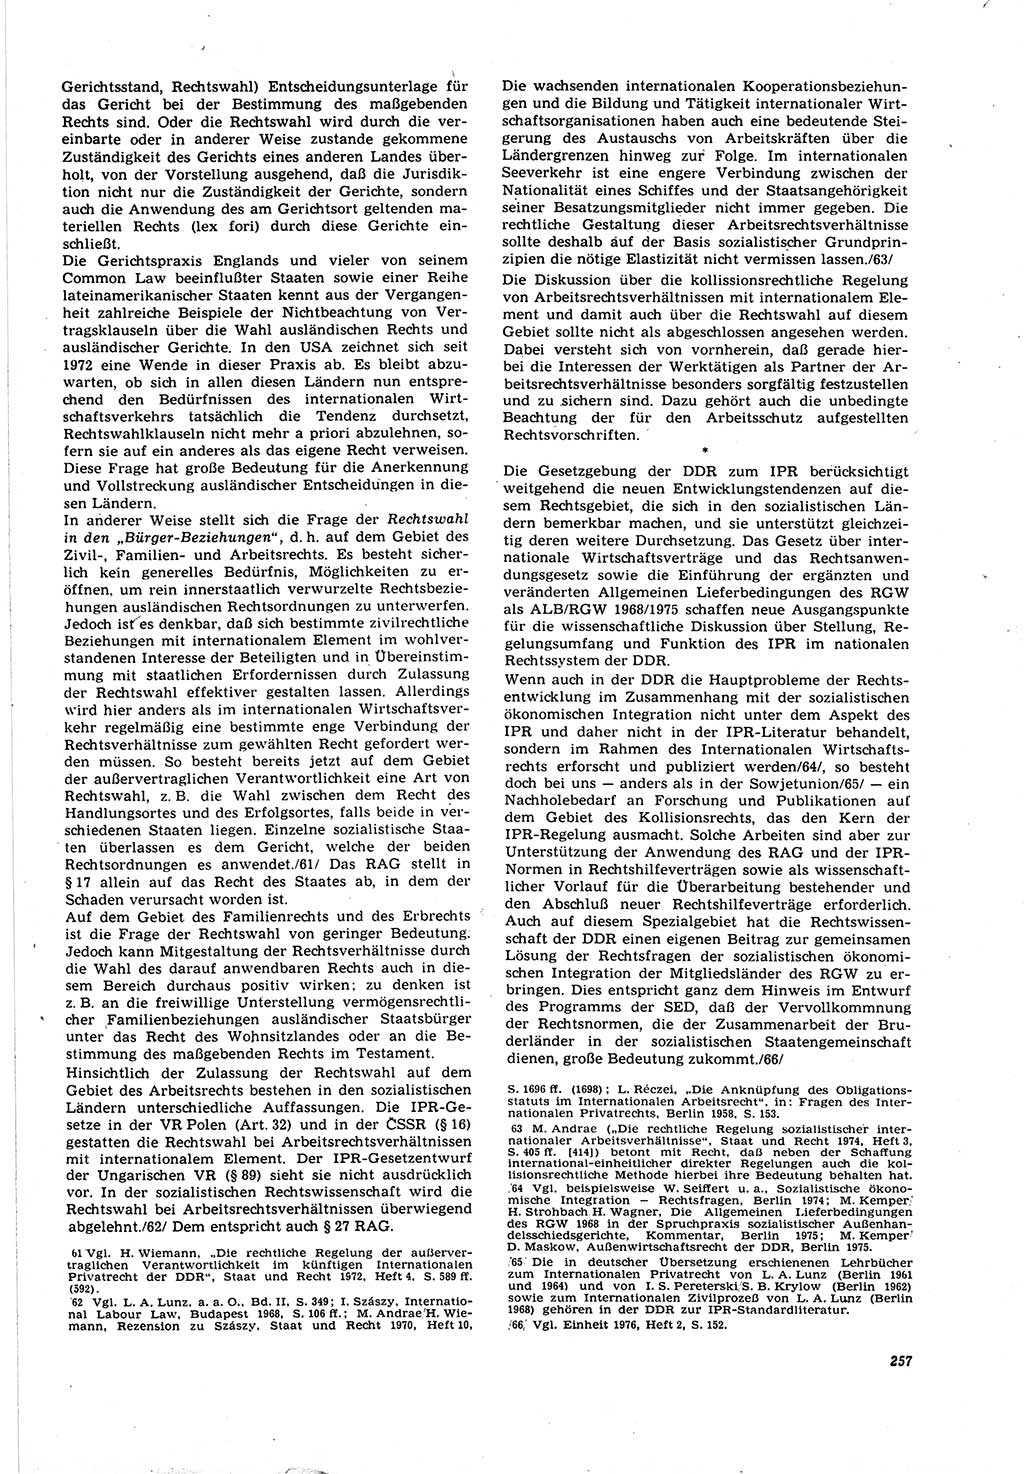 Neue Justiz (NJ), Zeitschrift für Recht und Rechtswissenschaft [Deutsche Demokratische Republik (DDR)], 30. Jahrgang 1976, Seite 257 (NJ DDR 1976, S. 257)